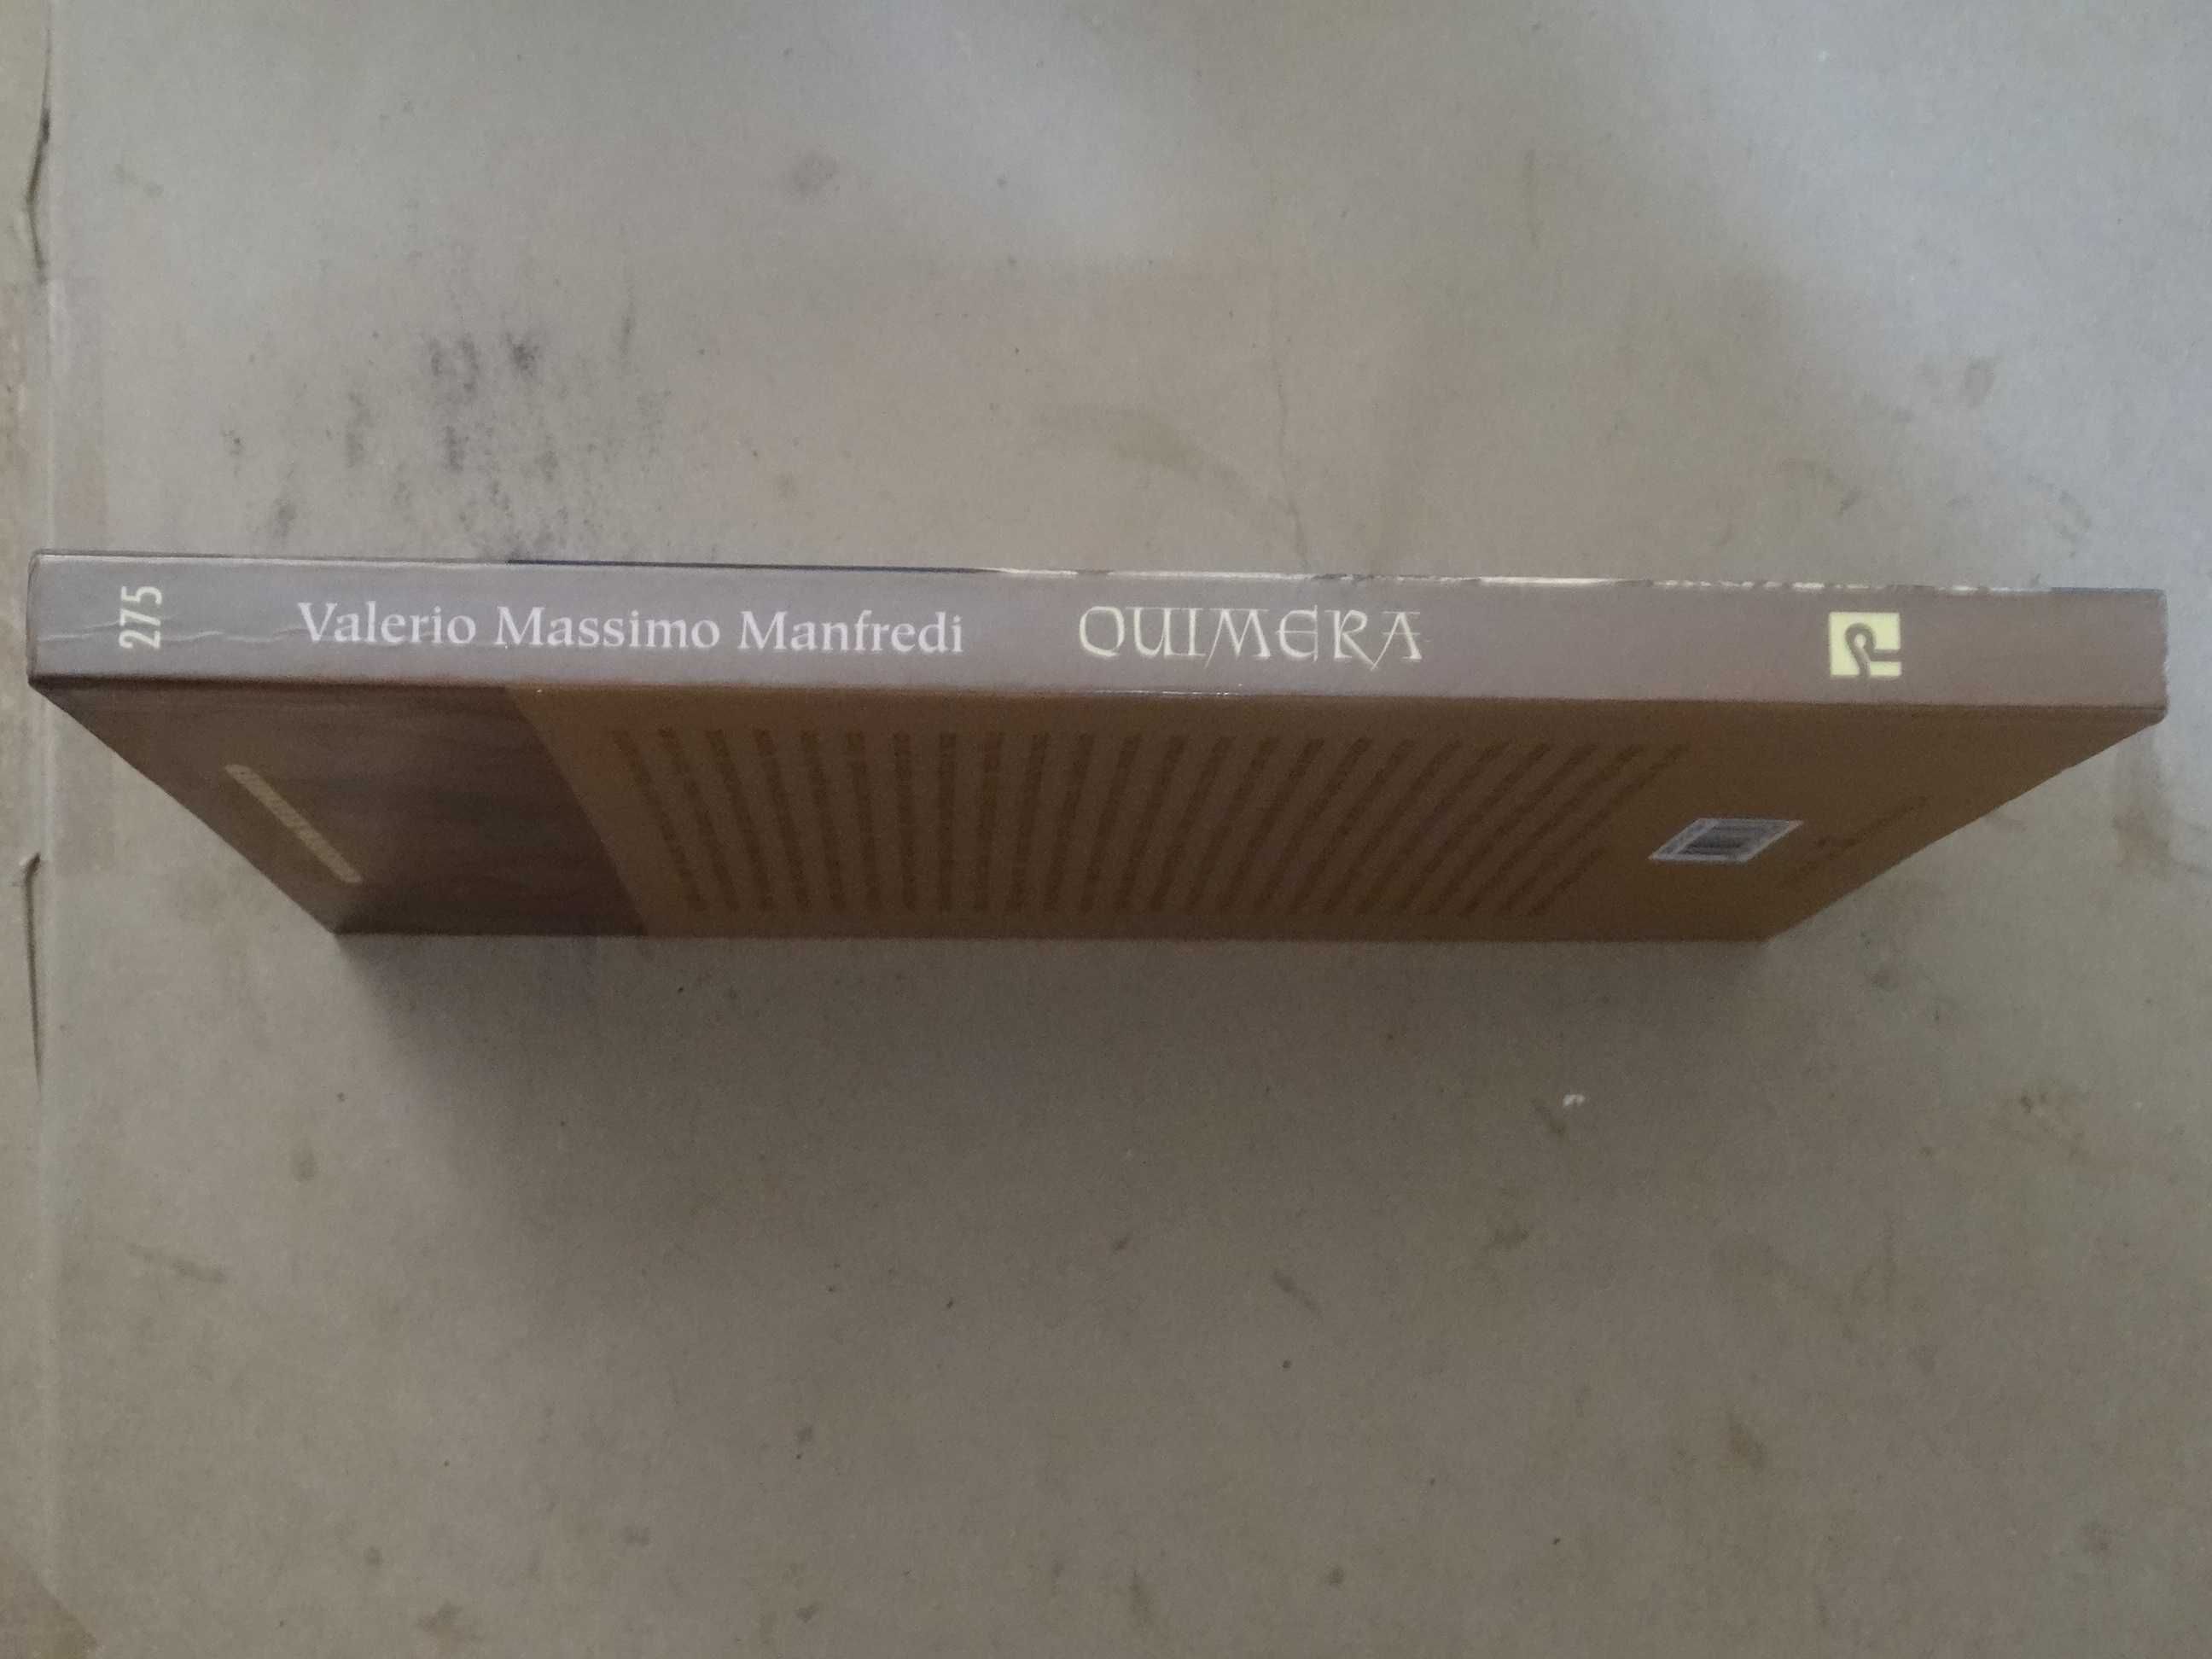 Quimera de Valerio Massimo Manfredi - 1ª Edição